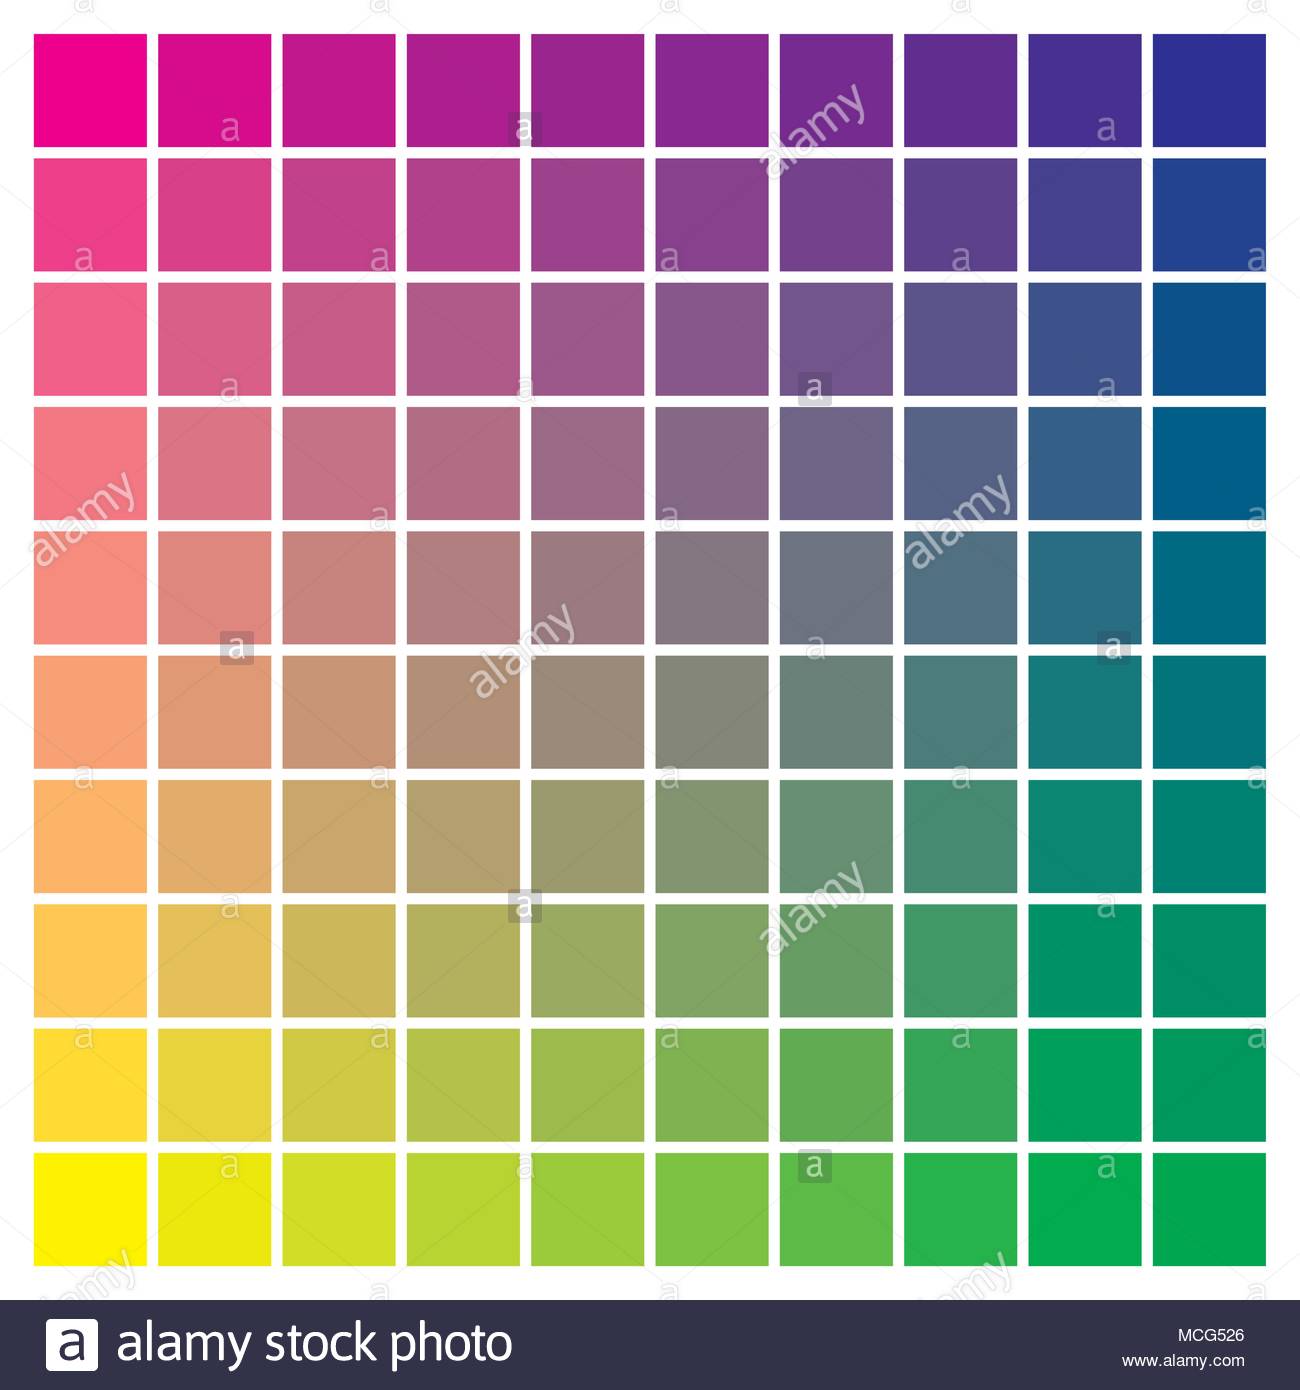 Cmyk Color Chart